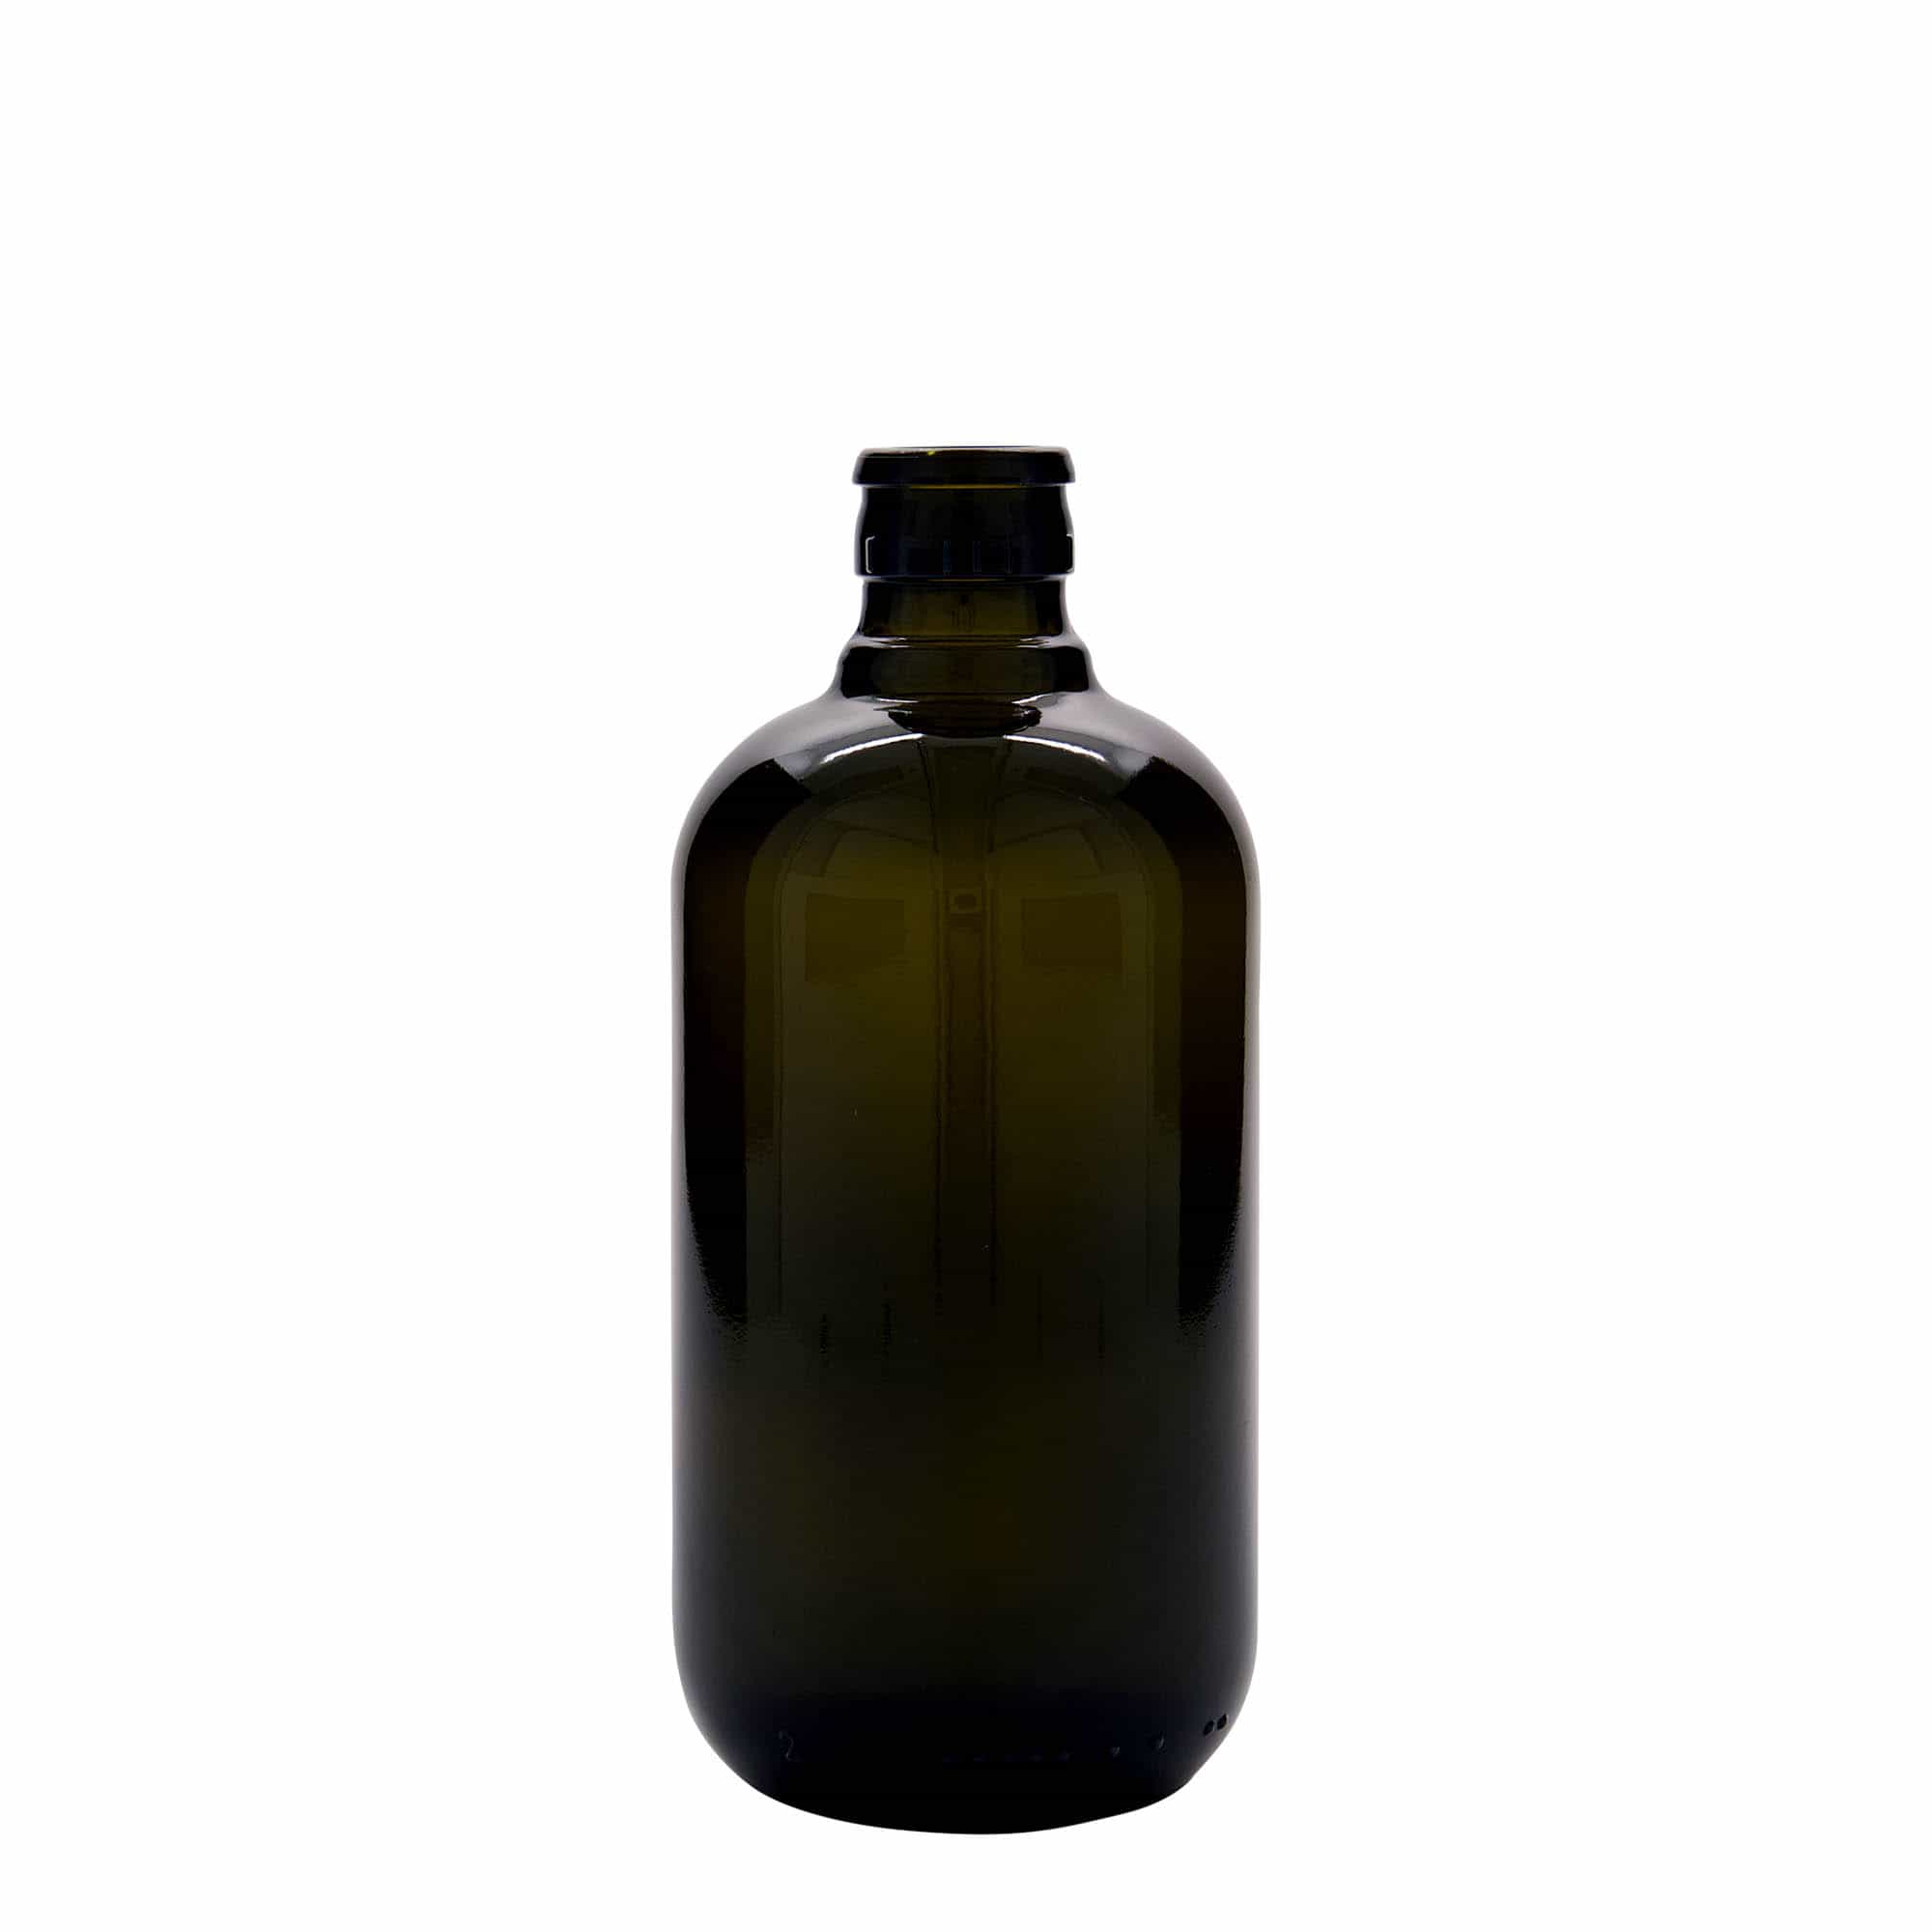 500 ml Bottiglia olio/aceto 'Biolio', vetro, verde antico, imboccatura: DOP